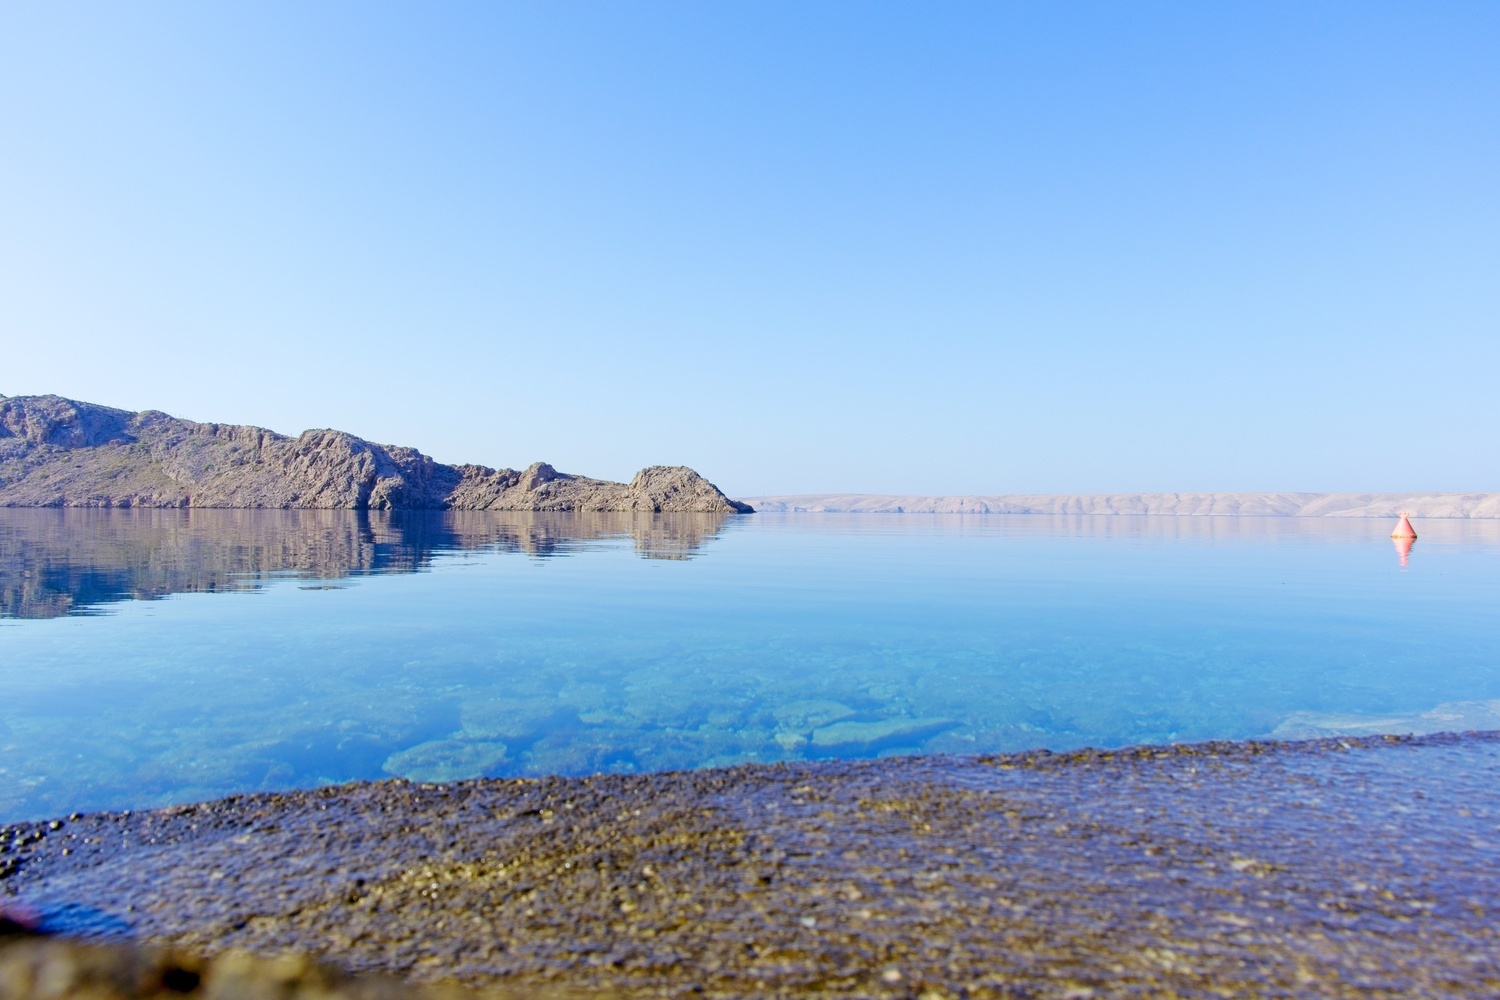 Zeitweillig war das Mittelmeer so ruhig und spiegelglatt, dass man einige Meter tief auf den Grund schauen konnte.